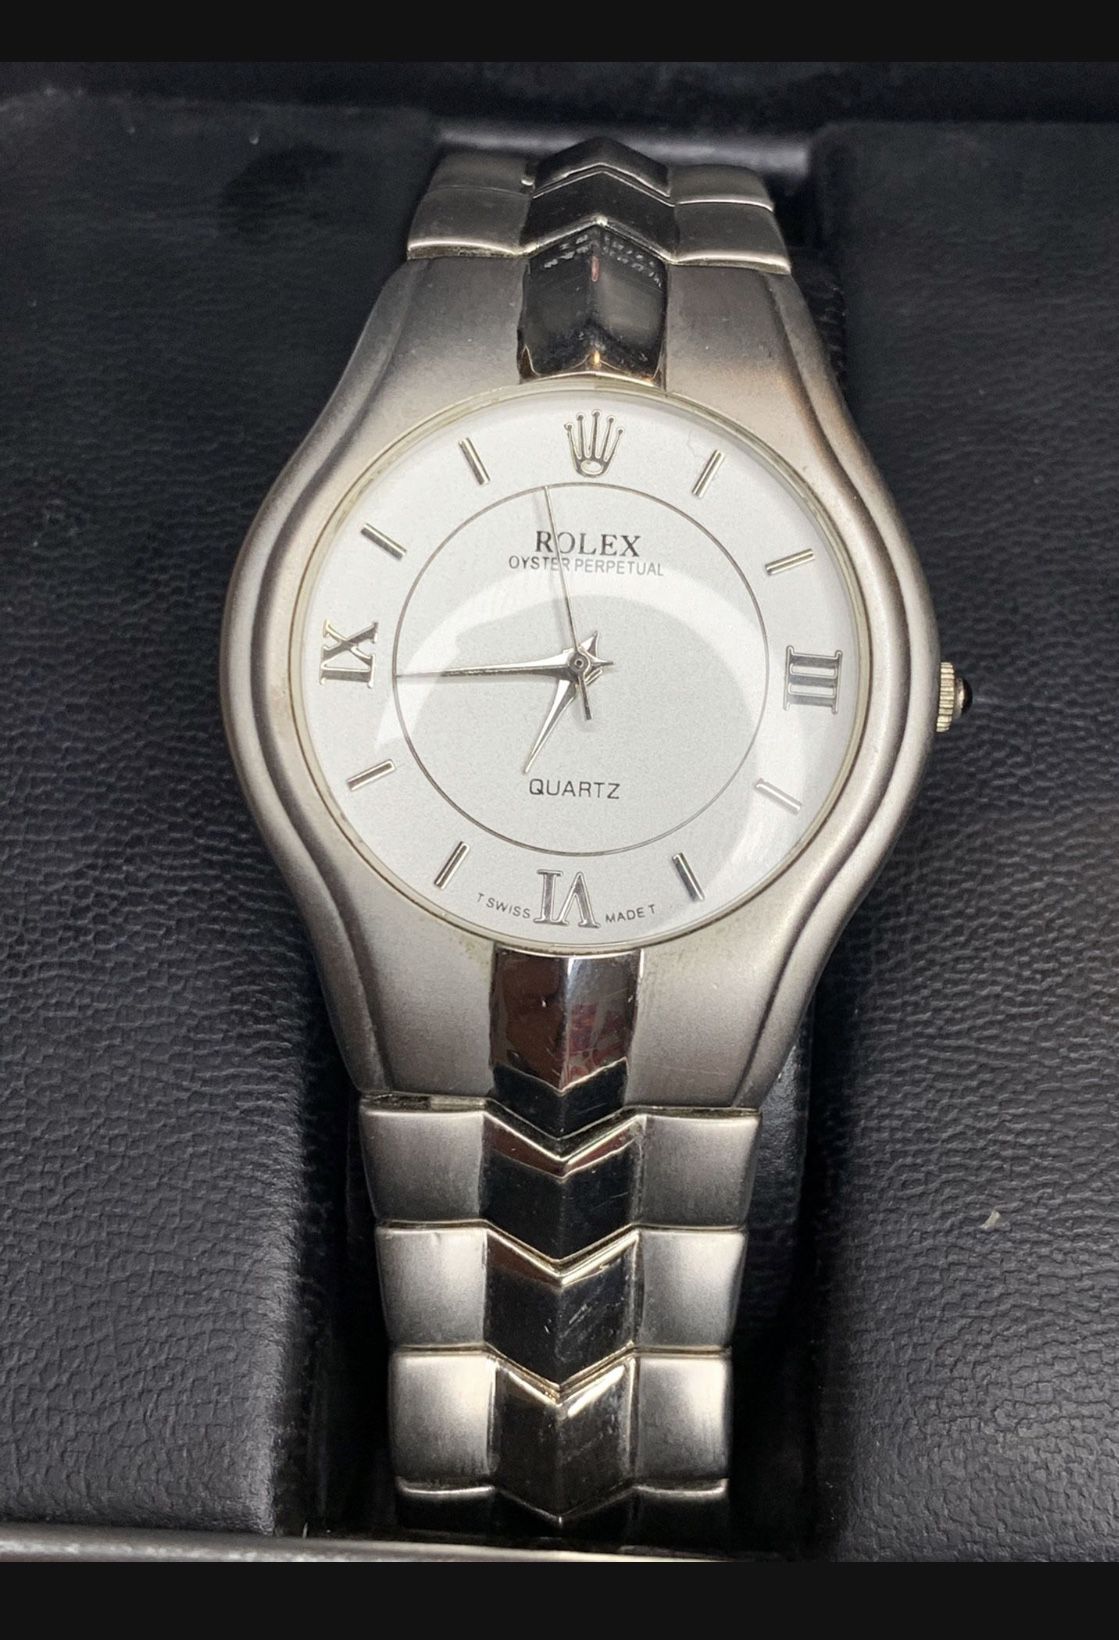 Vintage CHANEL PARIS 1987' Première Quartz Watch for Sale in Houston, TX -  OfferUp